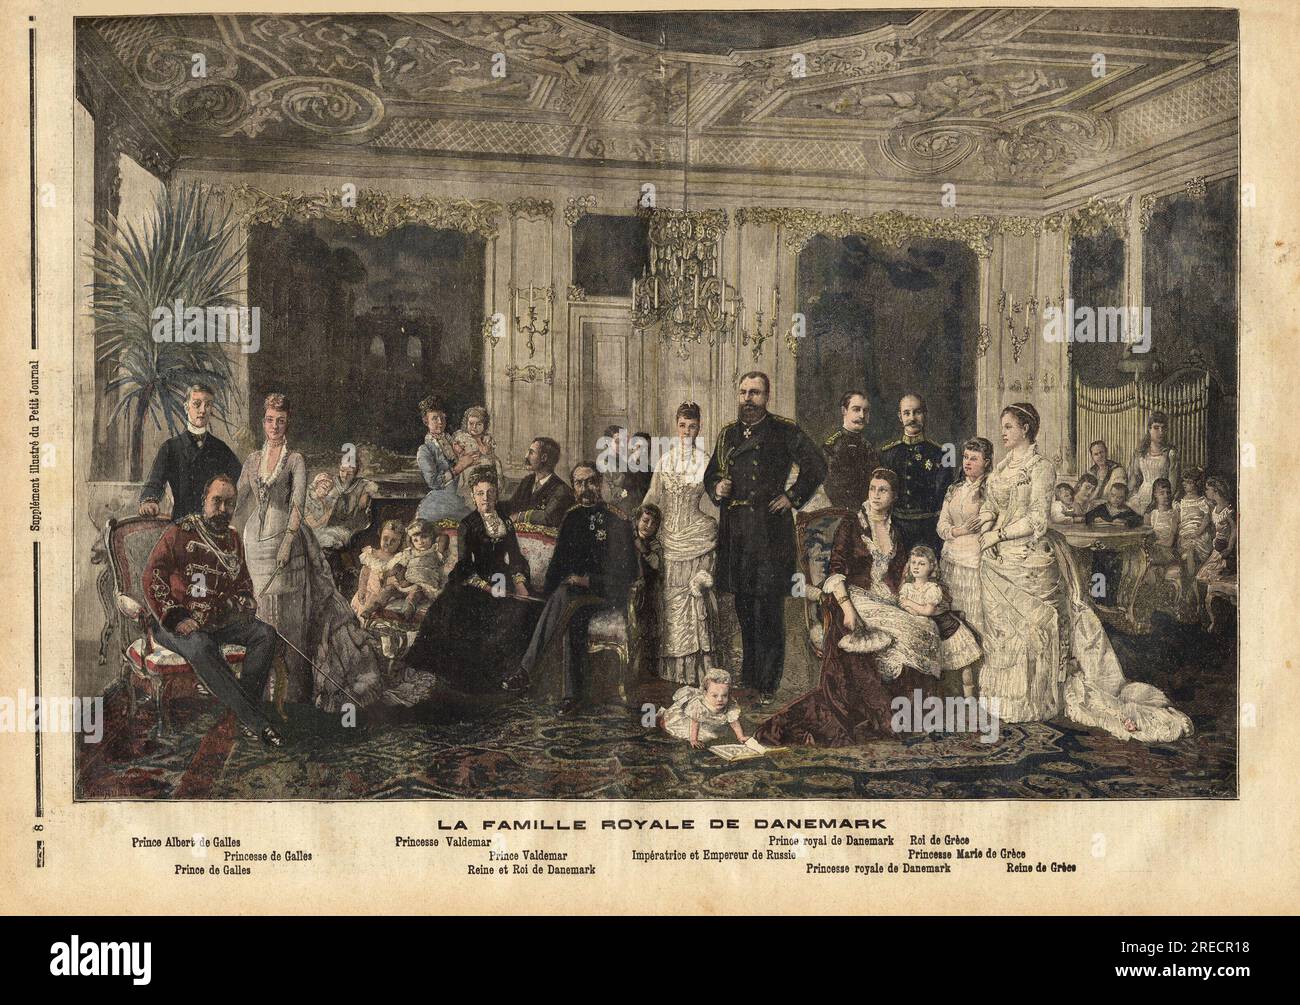 La famille royale du Danemark, avec assis au Centre, la reine Louise de Hesse-Kassel (1817-1898) et le roi Christian IX de Danemark (1818-1906) surnomme 'le beau pere de l'europe ' car il a marie plusieurs de ses enfants a des heritiers des grandes familles royales, comme il est represente ici entoure de ses enfants lors de la celebration des noces d'argent de sa fille avec le Zar de Russie: Derriere lui, la Princesse Marie d'Orleans (1865-1909) et son epoux le Prince Valdemar (1858-1939) , et a droite, assis, Albert Edouard Prince de Galles ( 1841-1910, futur Edouard VII du Royaume Uni) AV Stockfoto